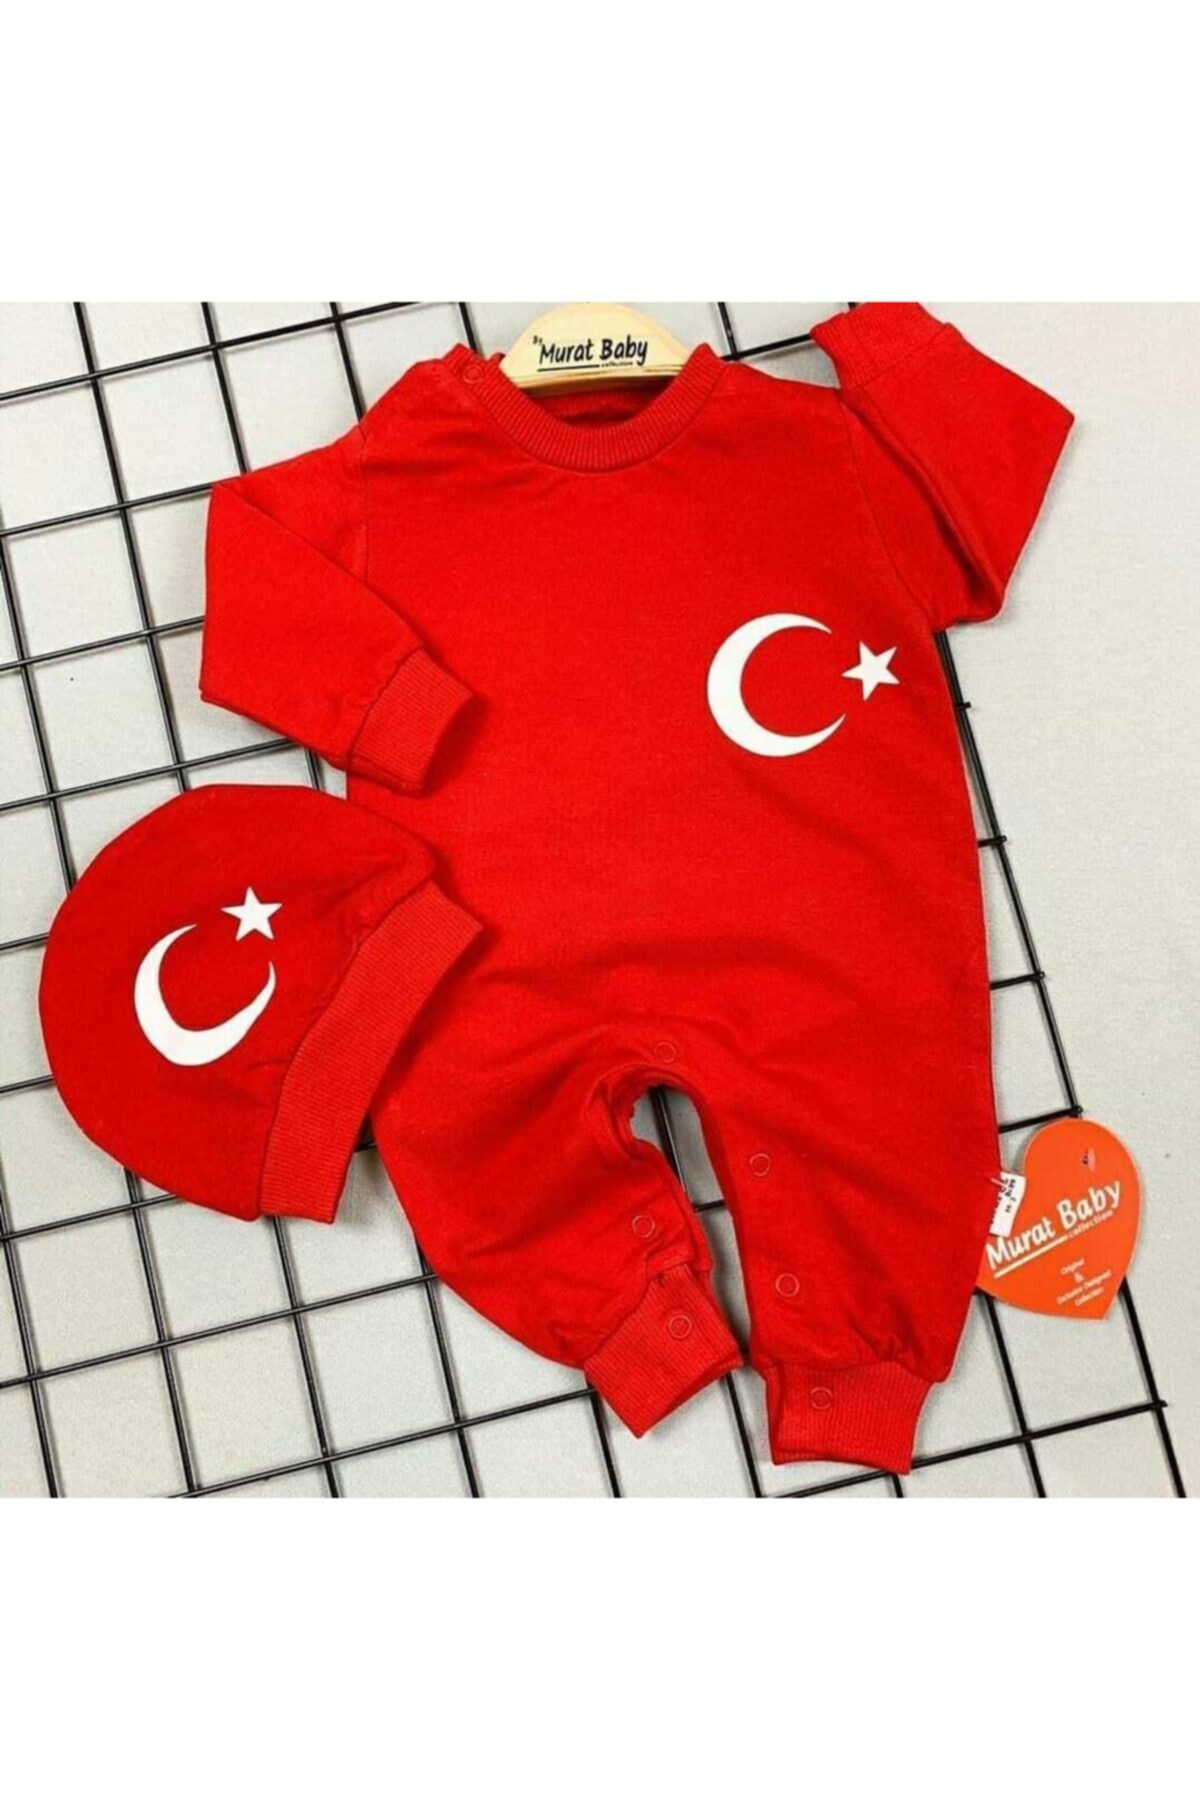 Murat Baby Türkiye Ay Yıldızlı Unısex Şapkalı Penye Tulum